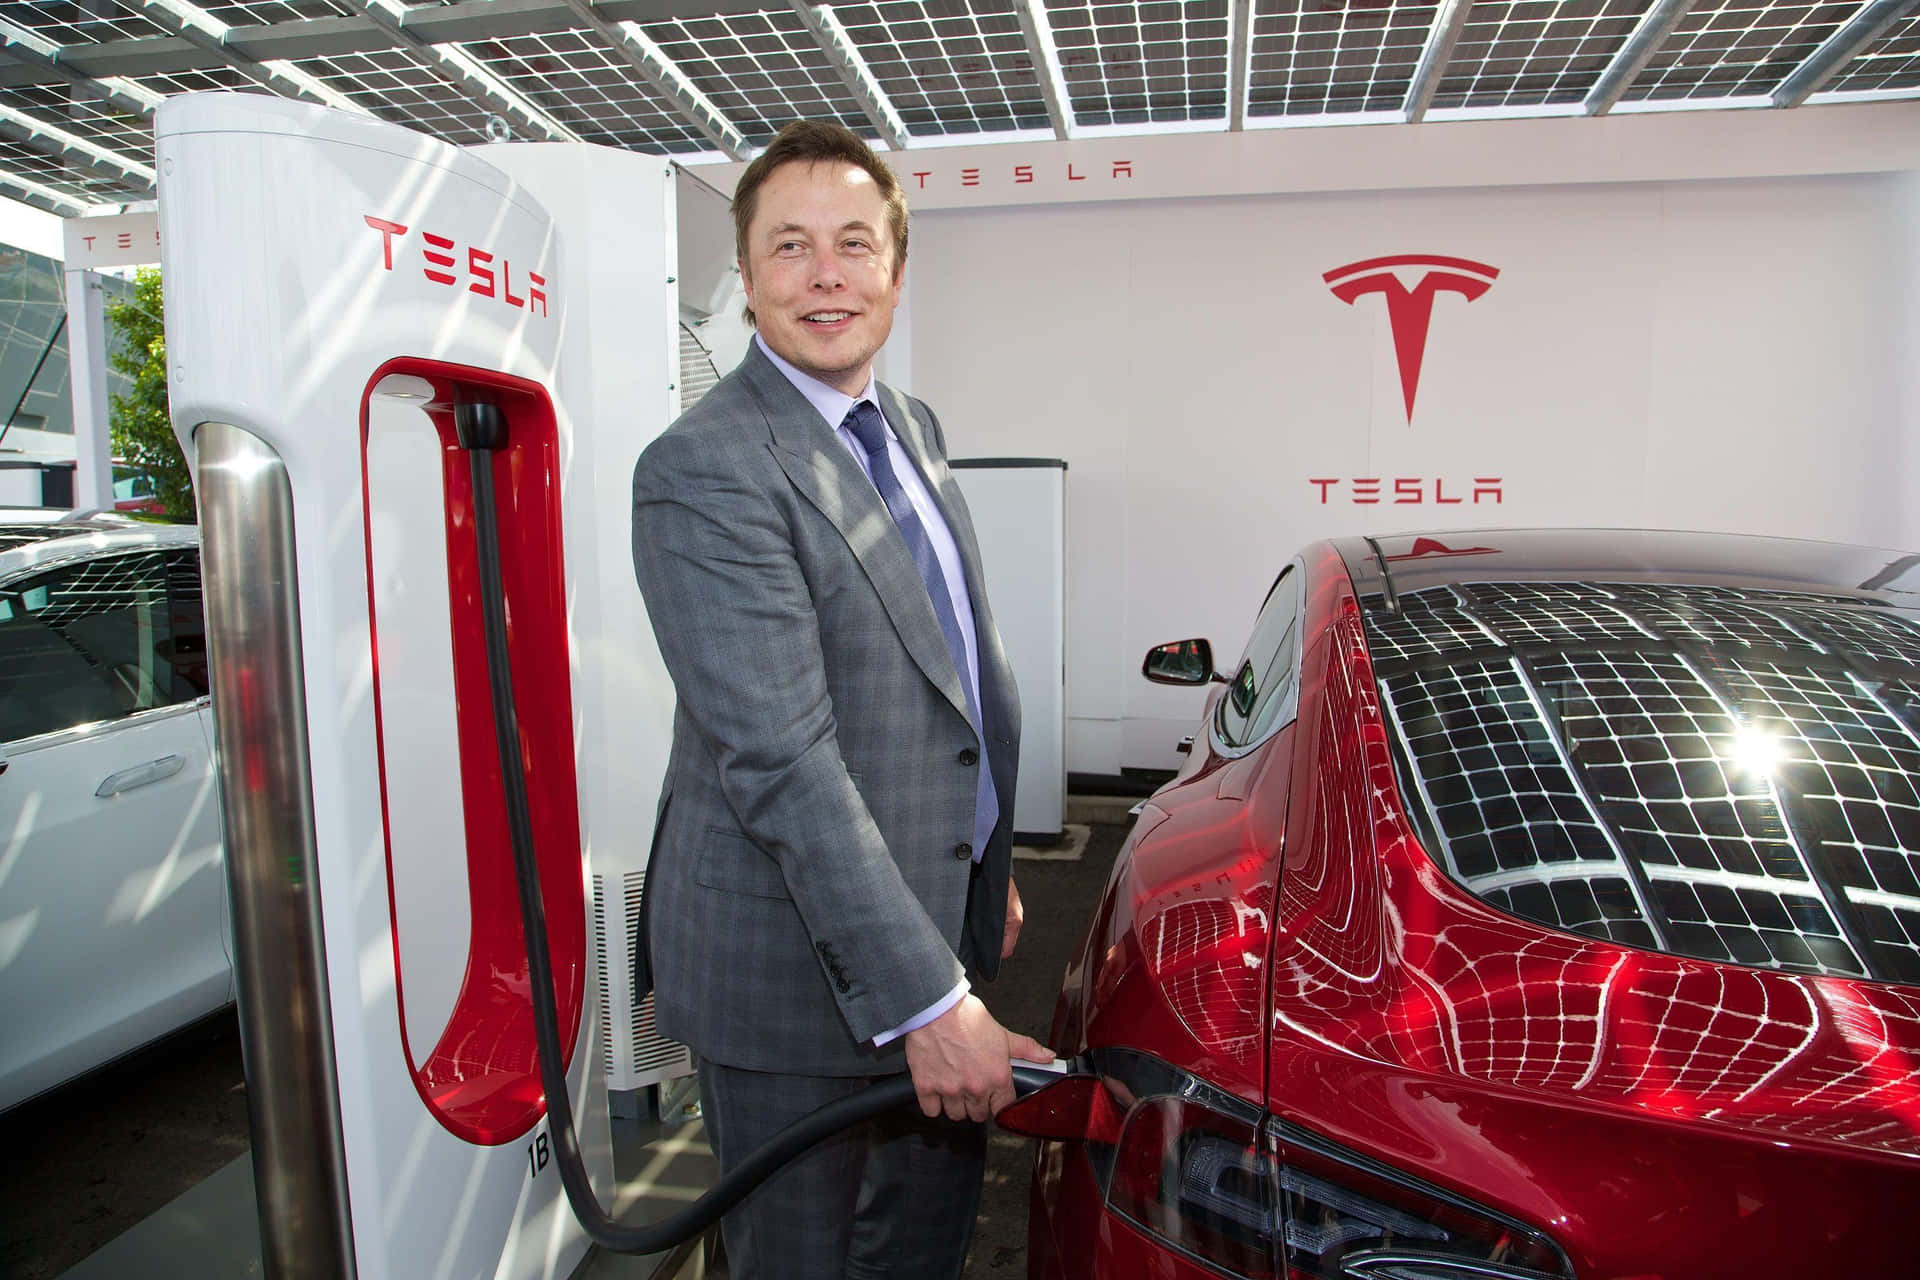 Elon Musk - Innovator and Entrepreneur